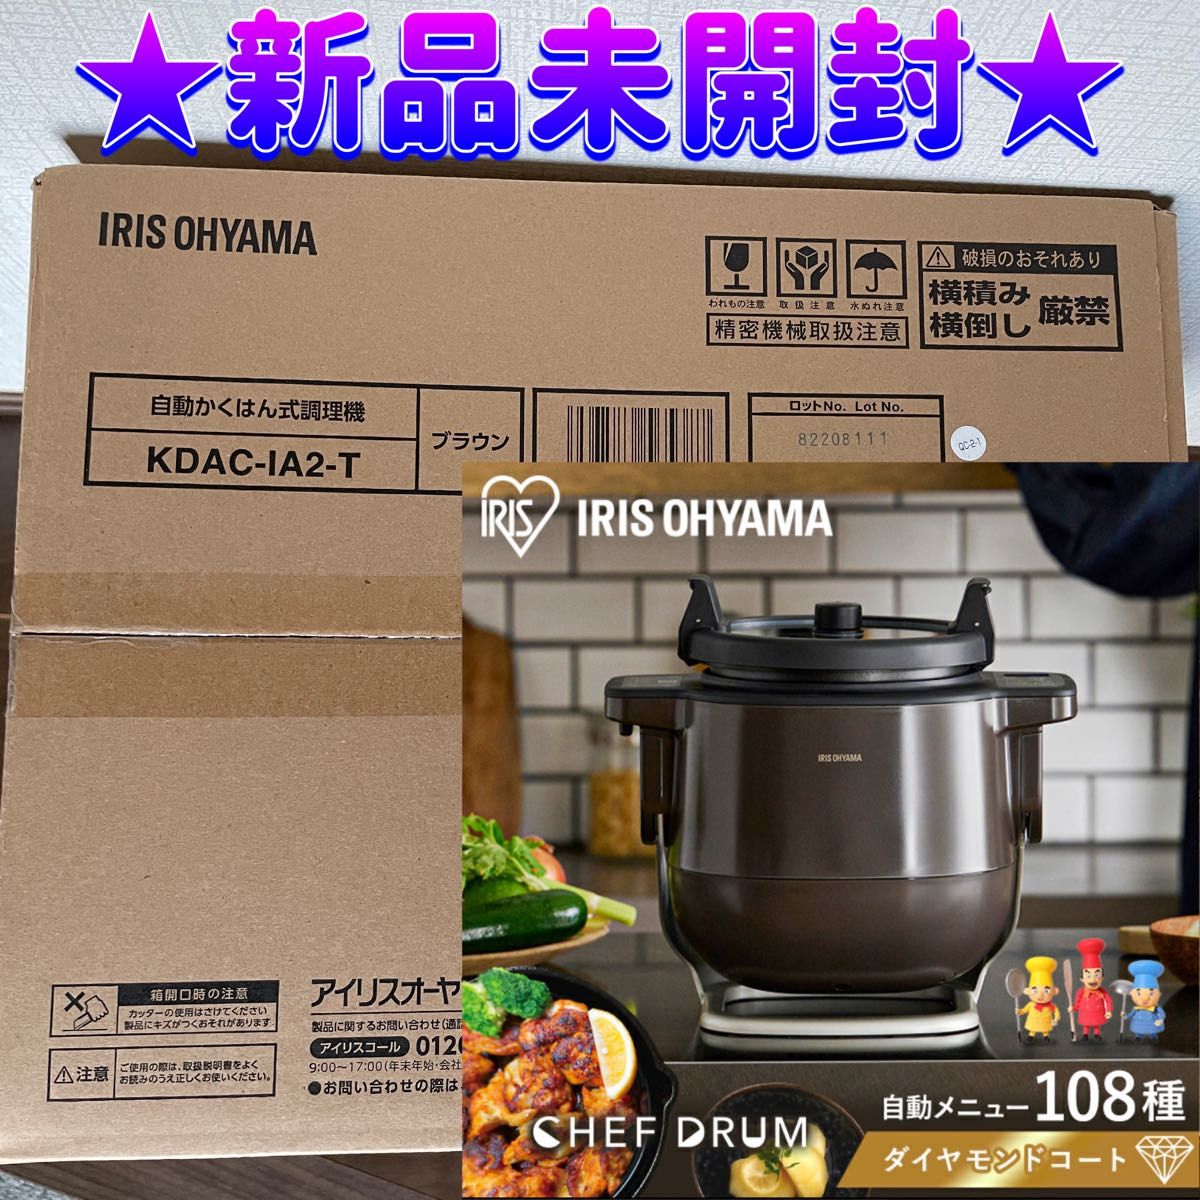 ☆新品未開封☆ 自動かくはん式調理機 CHEF DRUM KDAC-IA2-T シェフ